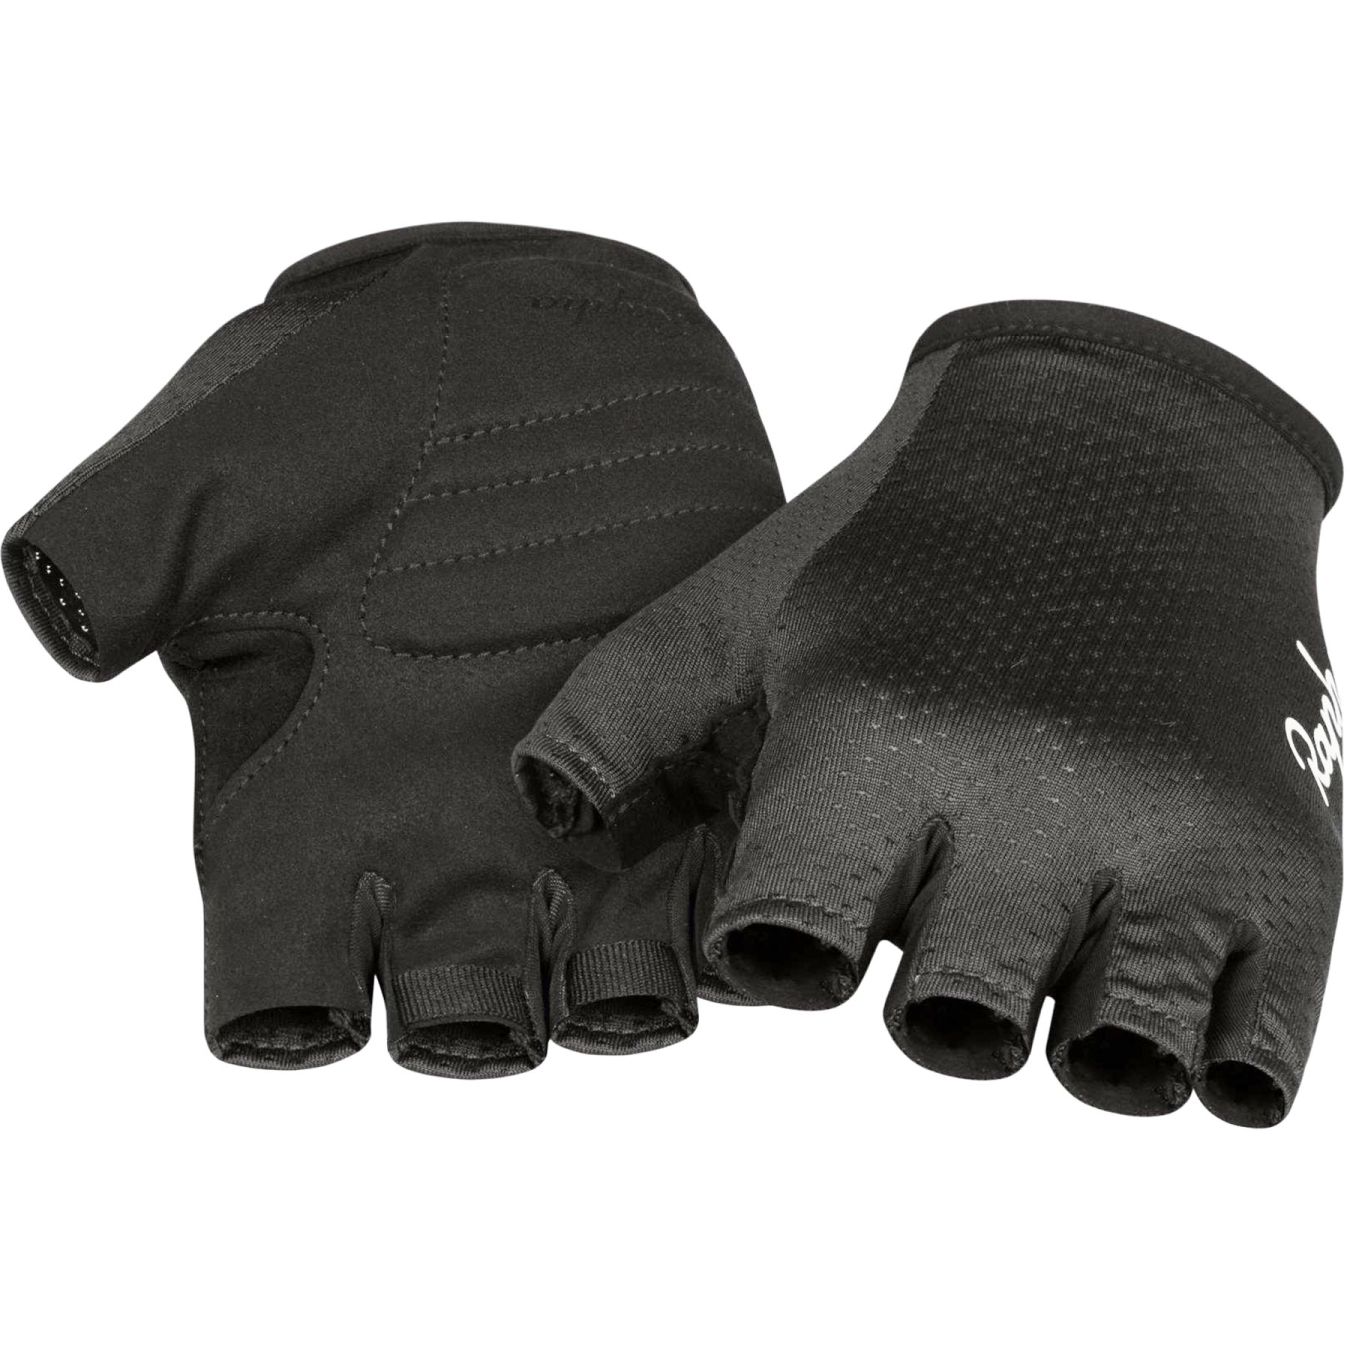 Productfoto van Rapha Core Handschoenen met Korte Vingers - black